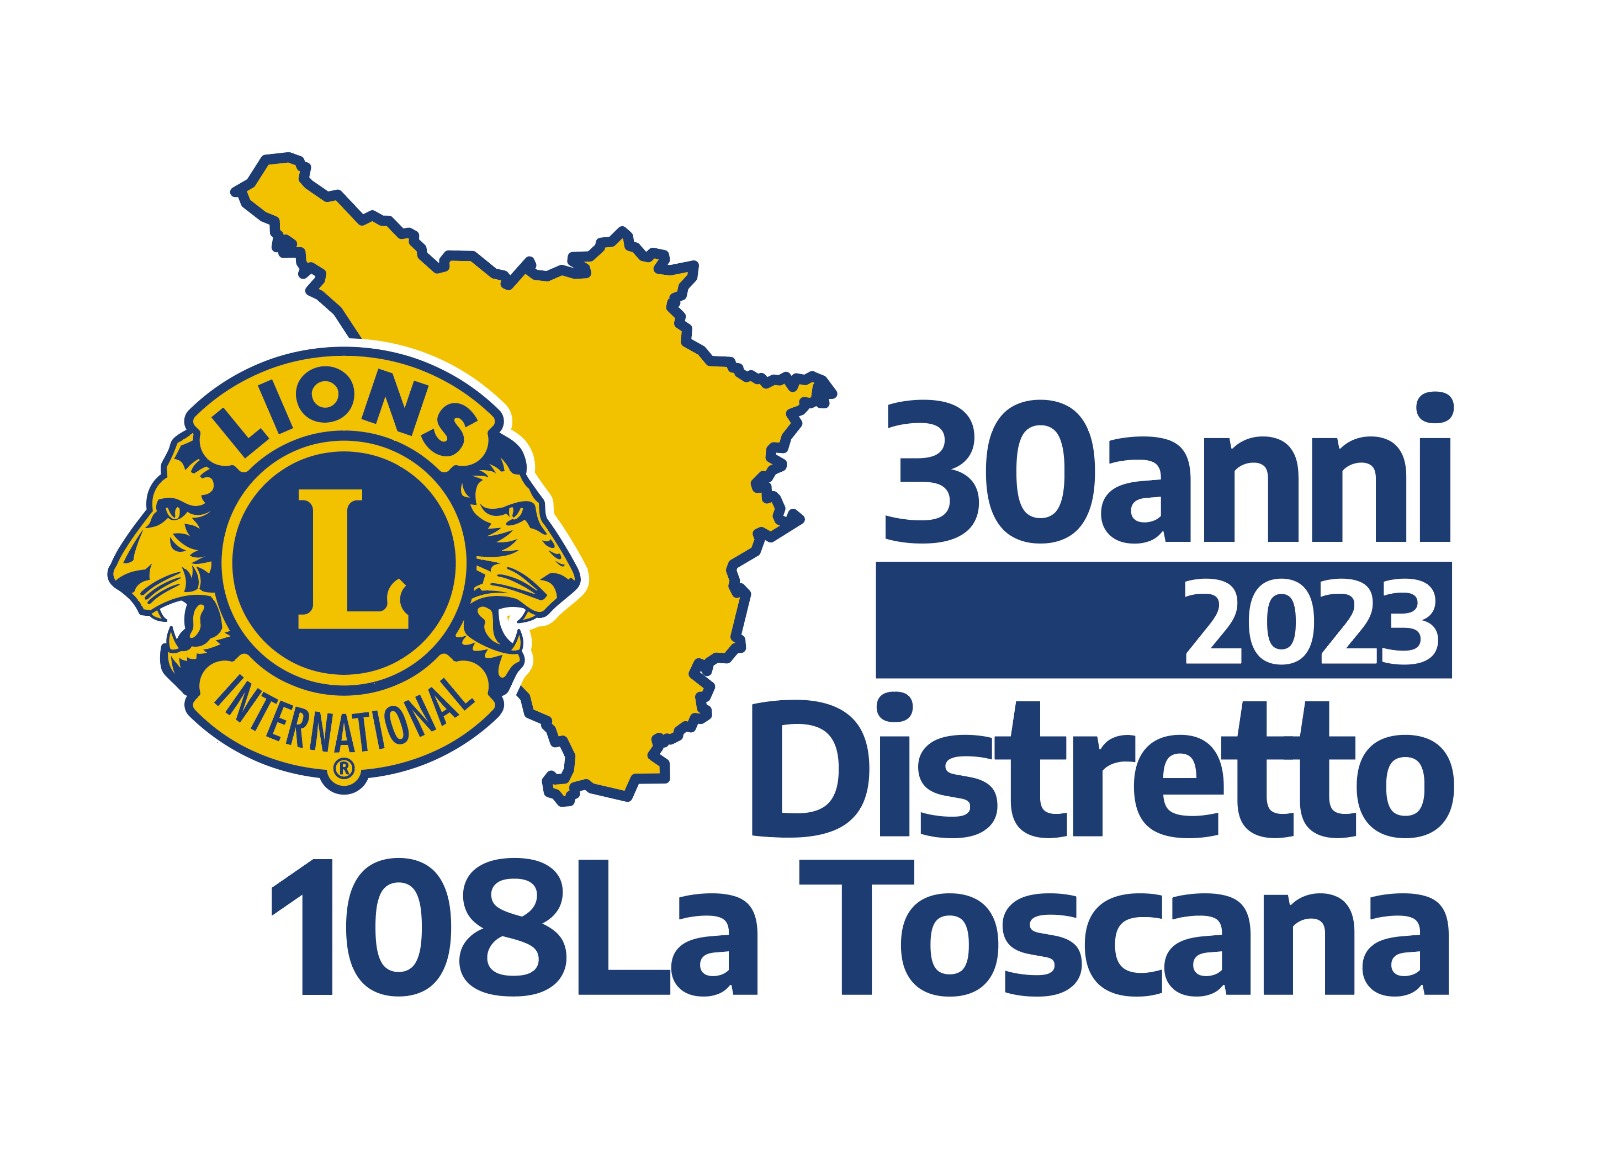 400 Leones de toda la Toscana en Viareggio para el 42º Congreso Distrital de Leones de la Toscana